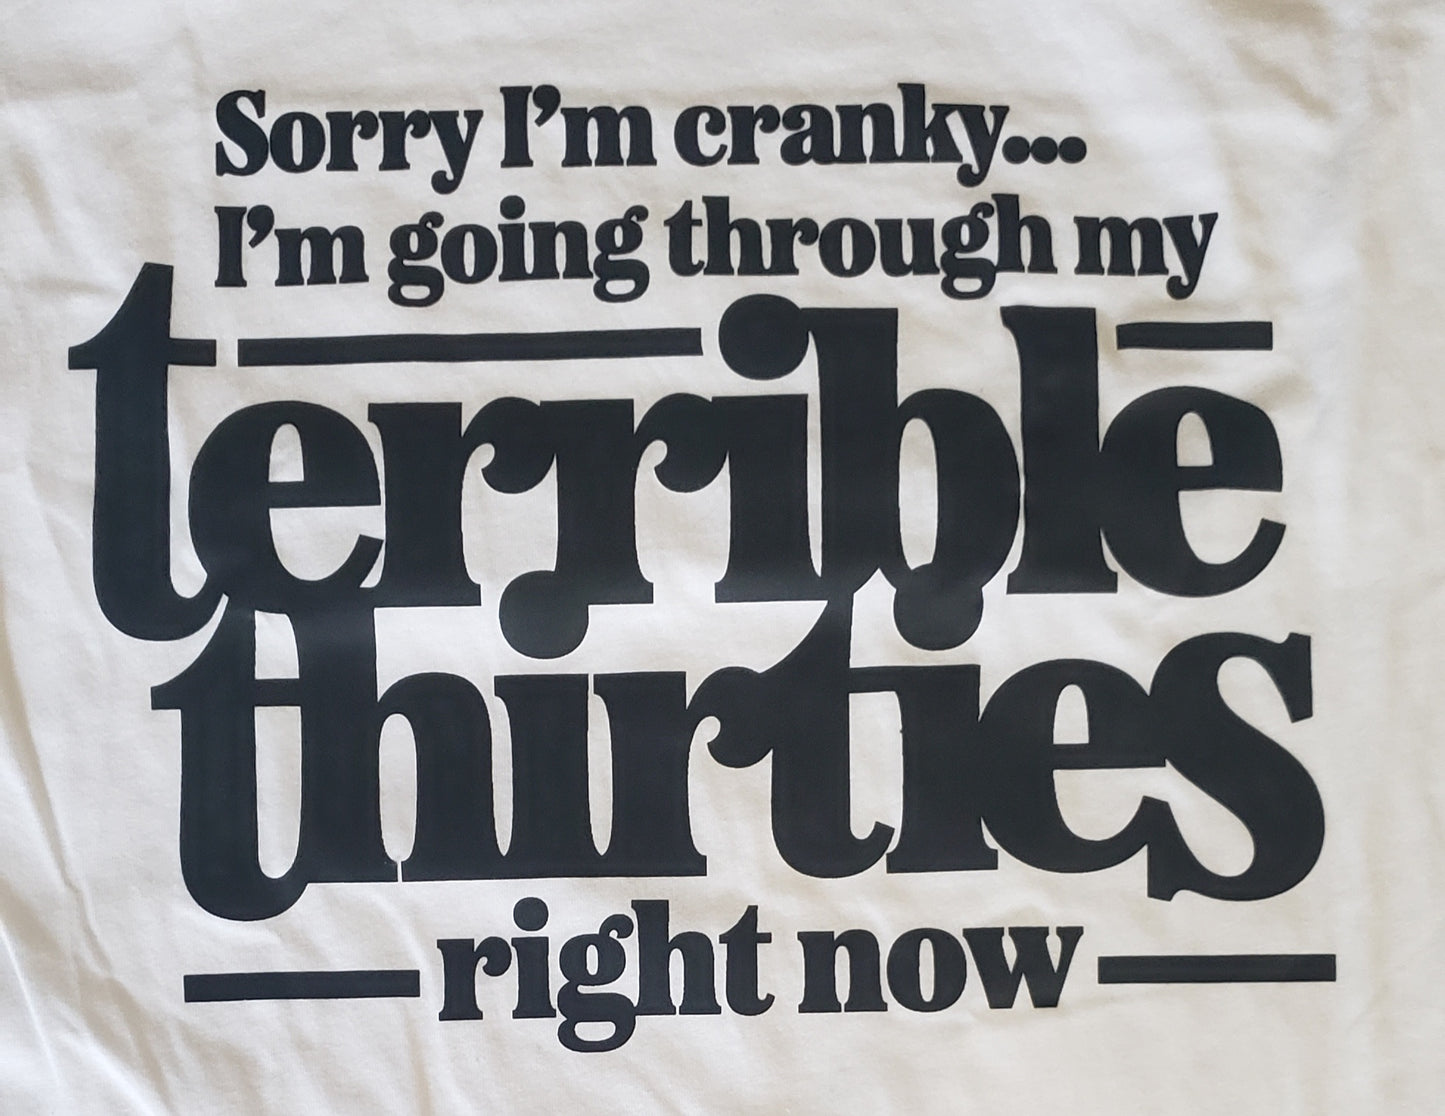 Terrible Thirties -RTS